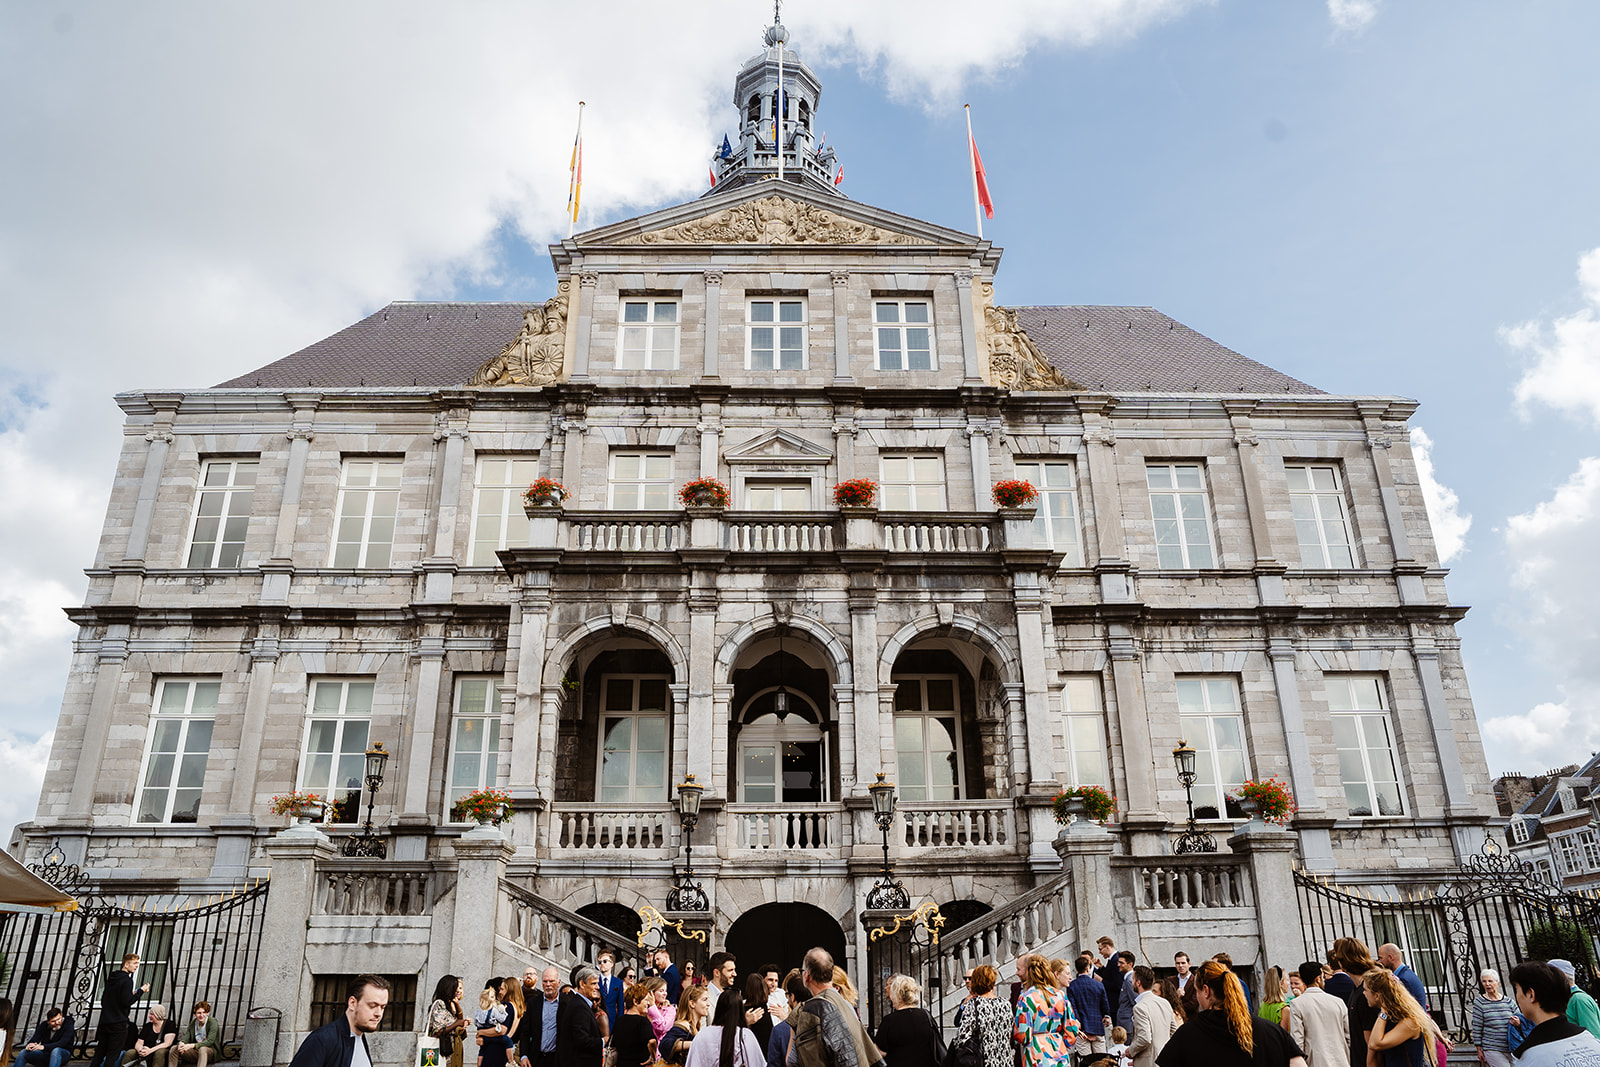 Trouwen in Maastricht - Overzichtsfoto van het stadhuis in Maastricht